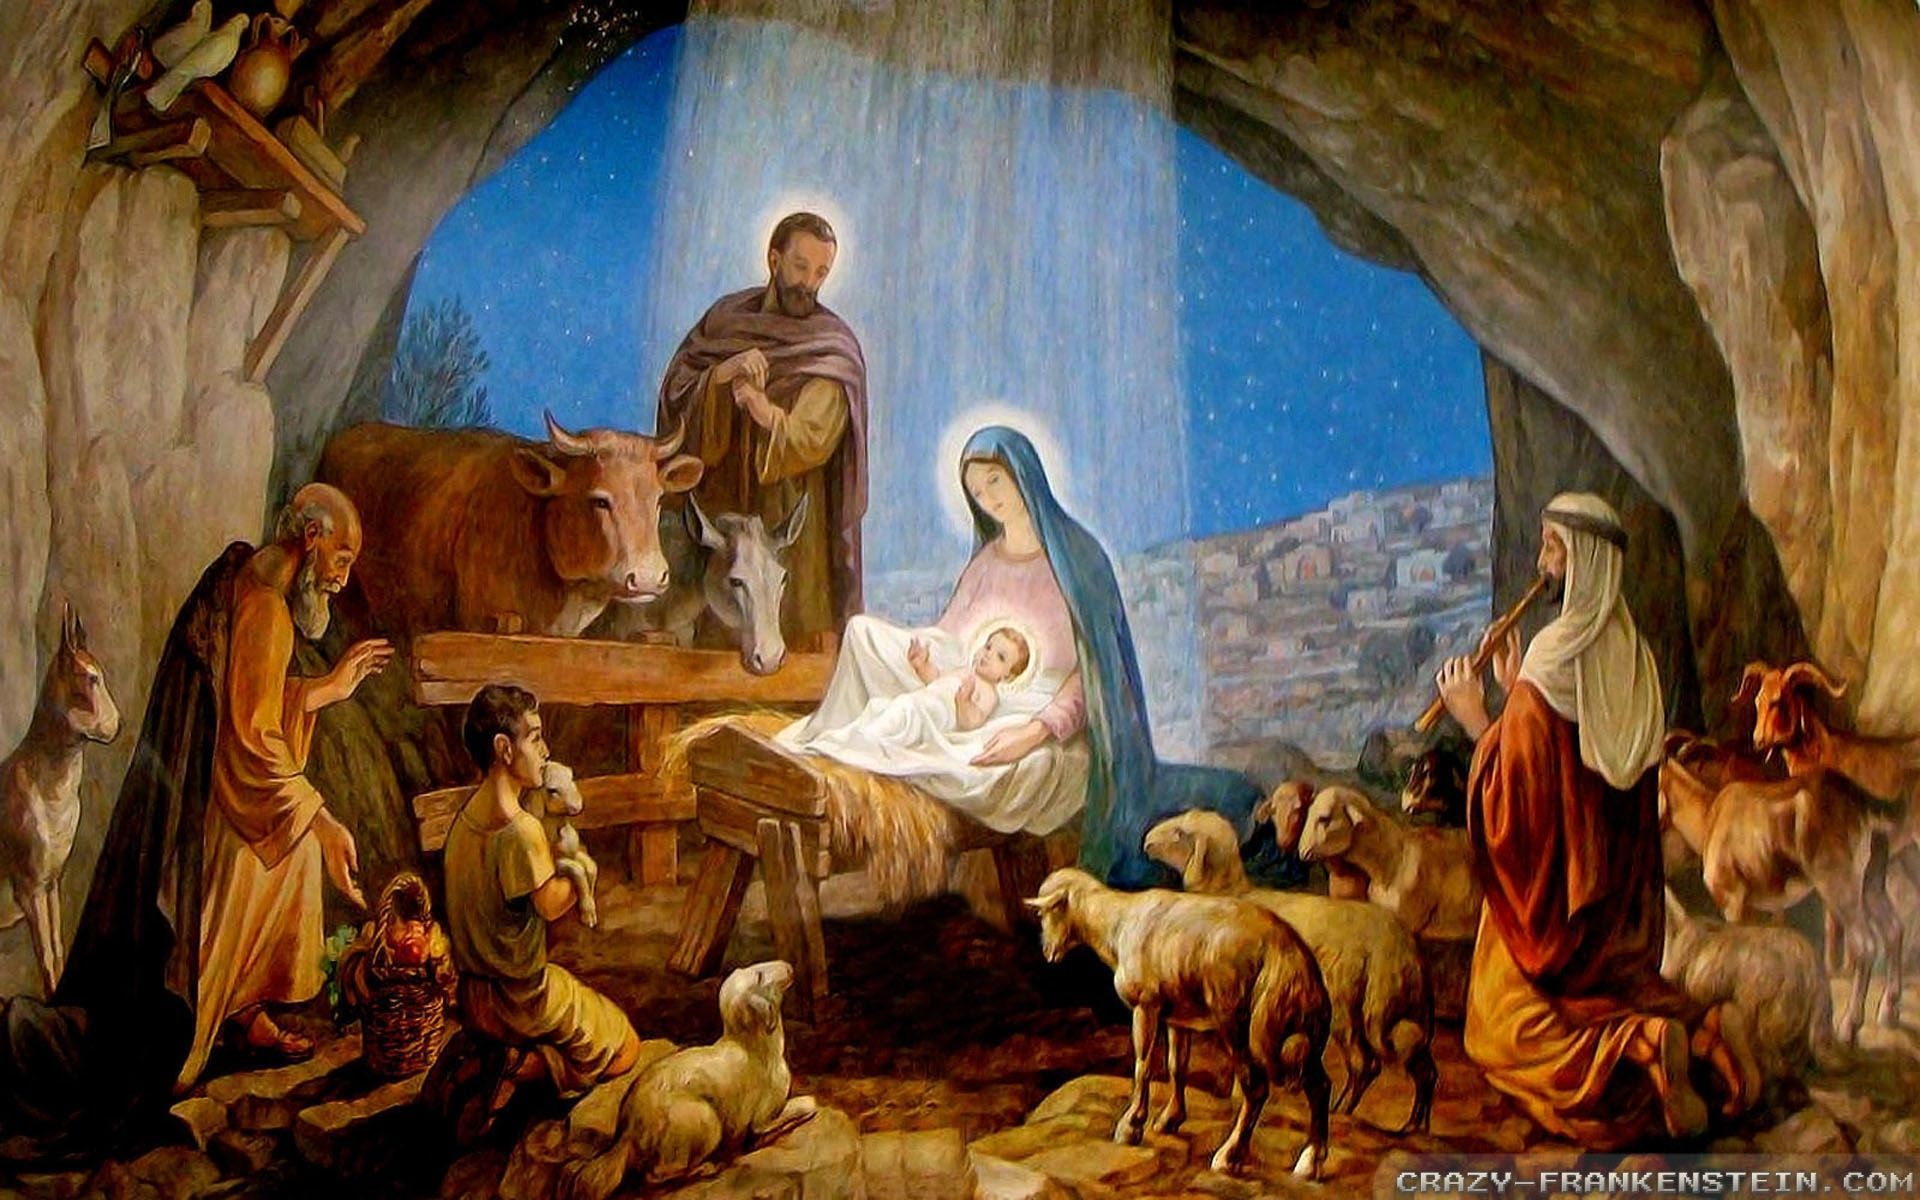 44+] Jesus Birth Wallpaper - WallpaperSafari